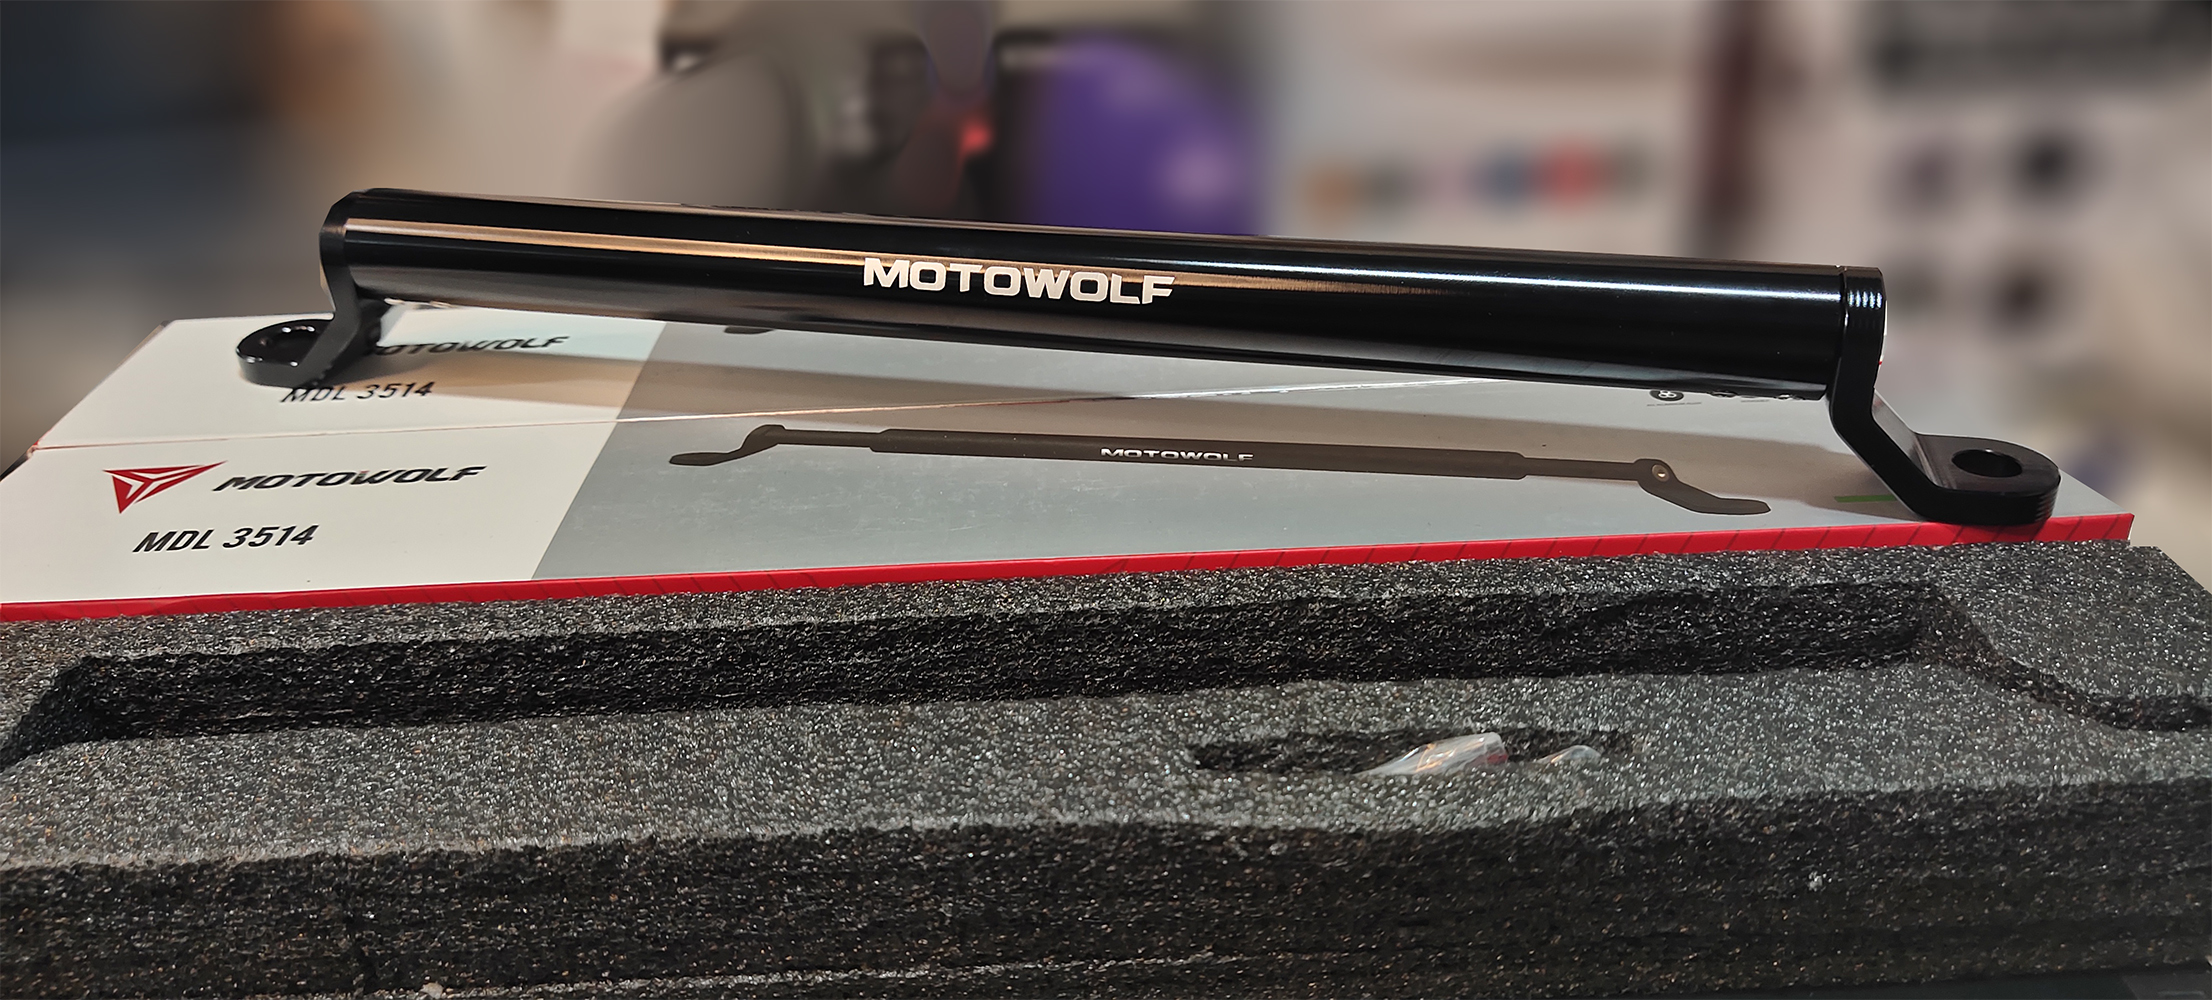 บาร์เสริม Motowolf (แถมฟรี ประแจหกเหลี่ยม, อะไหล่น็อต 2 ตัว) บาร์เสริม Motowolf MDL 3514 ทำจากเหล้กใช้ได้กับ เวฟ , คลิก ทุกรุ่น